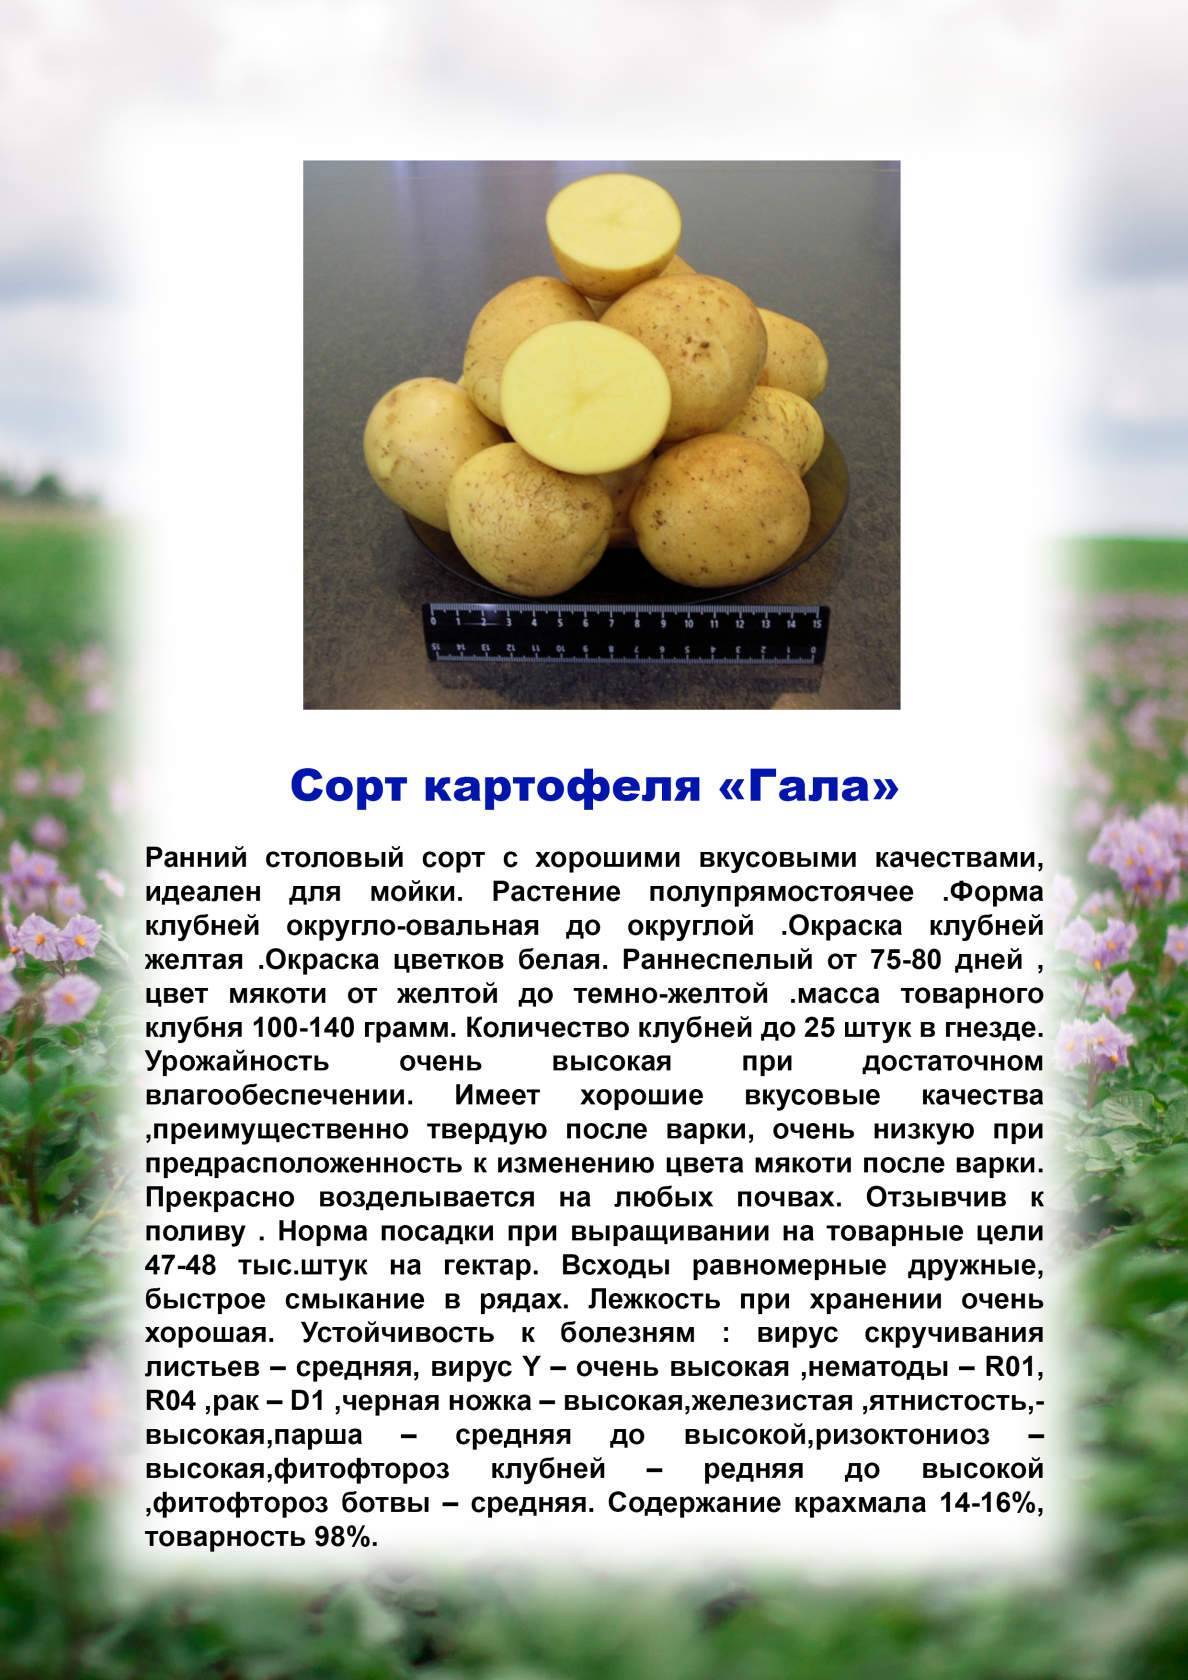 Картофель вектор: описание сорта, фото, отзывы, урожайность, посадка и уход